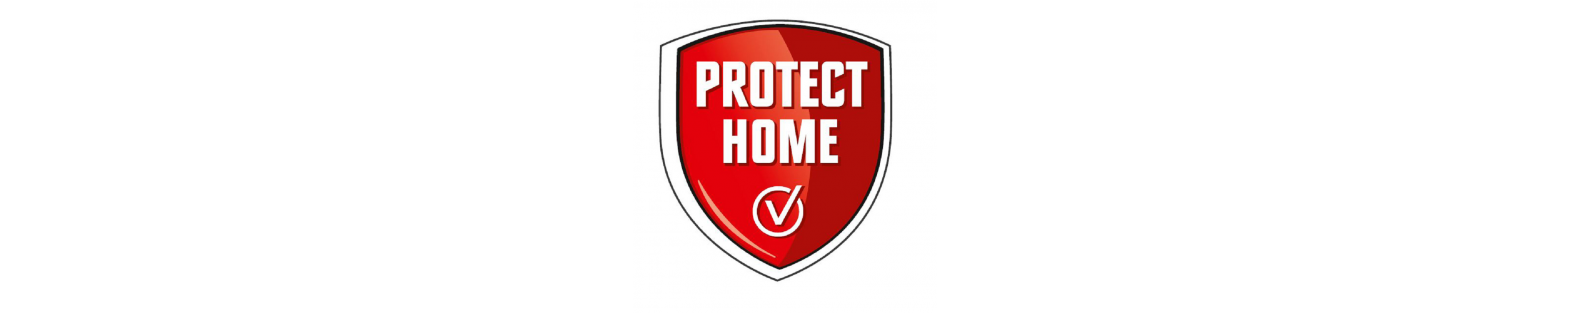 Proteger Casa